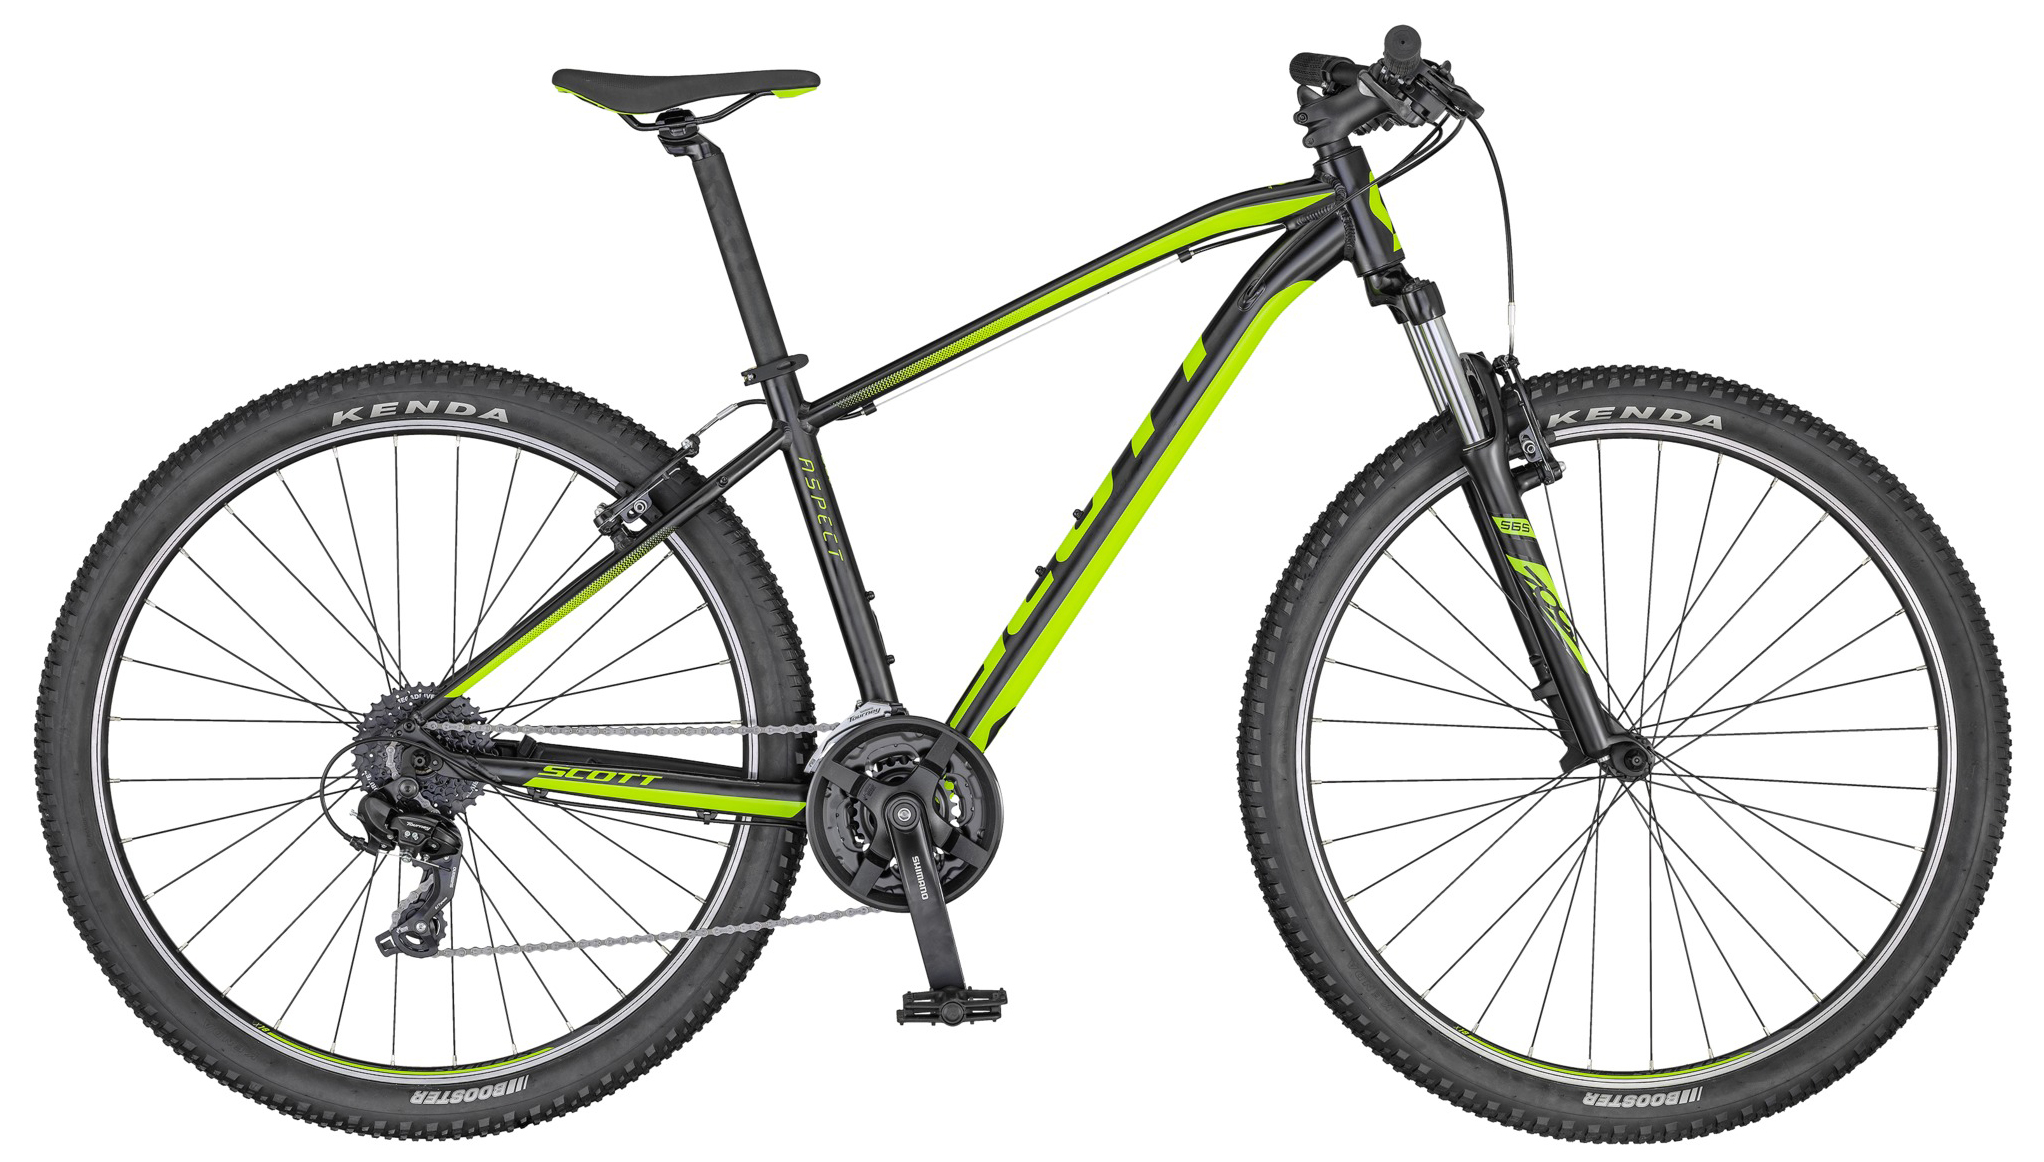  Отзывы о Горном велосипеде Scott Aspect 980 2020